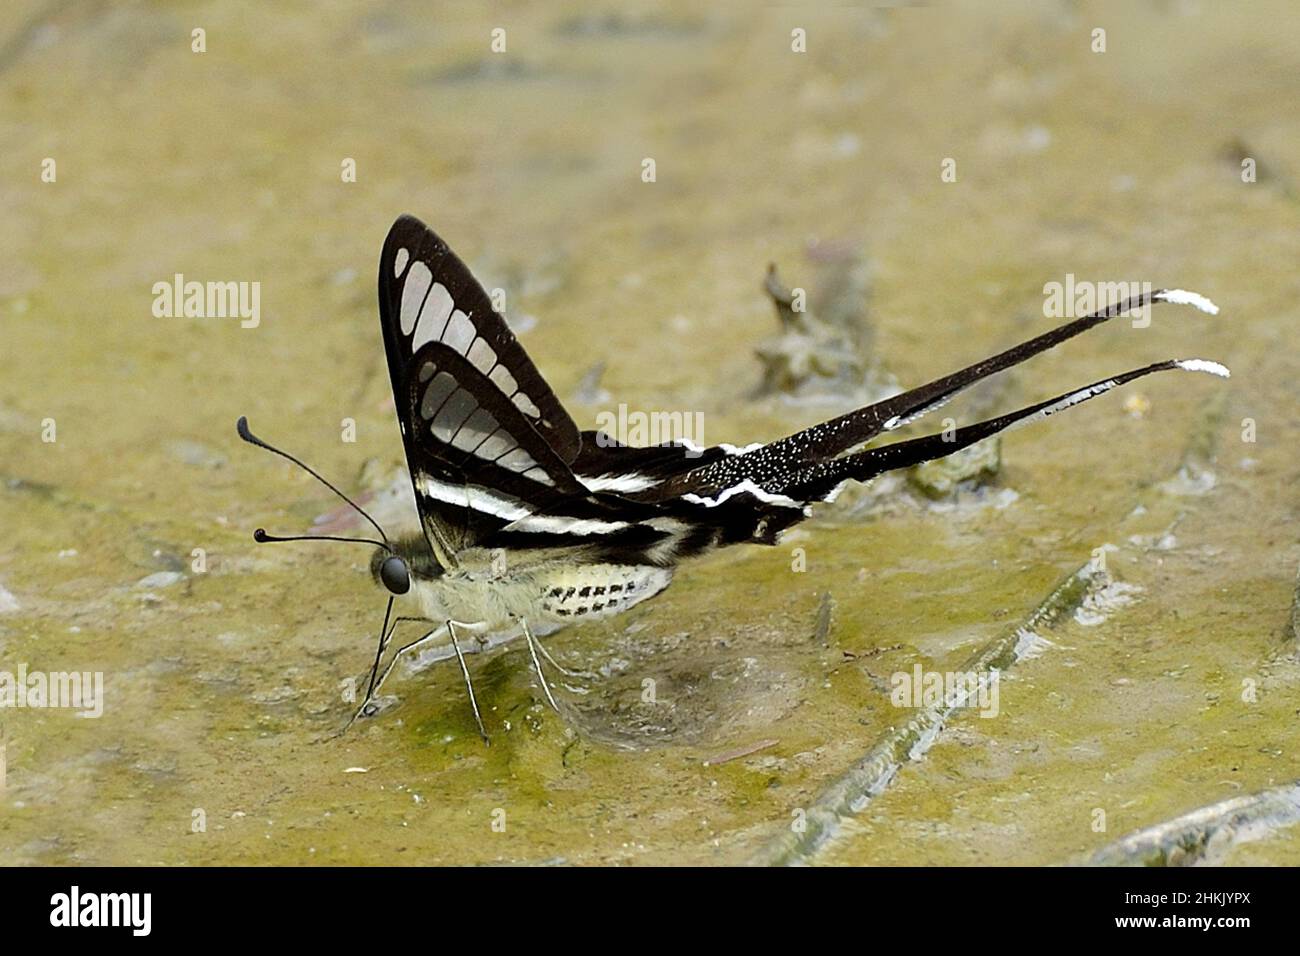 Weißer Dragontail, Schwalbenschwanz (Lamproptera curius curius), auf nassem Boden sitzend, Seitenansicht, Thailand Stockfoto